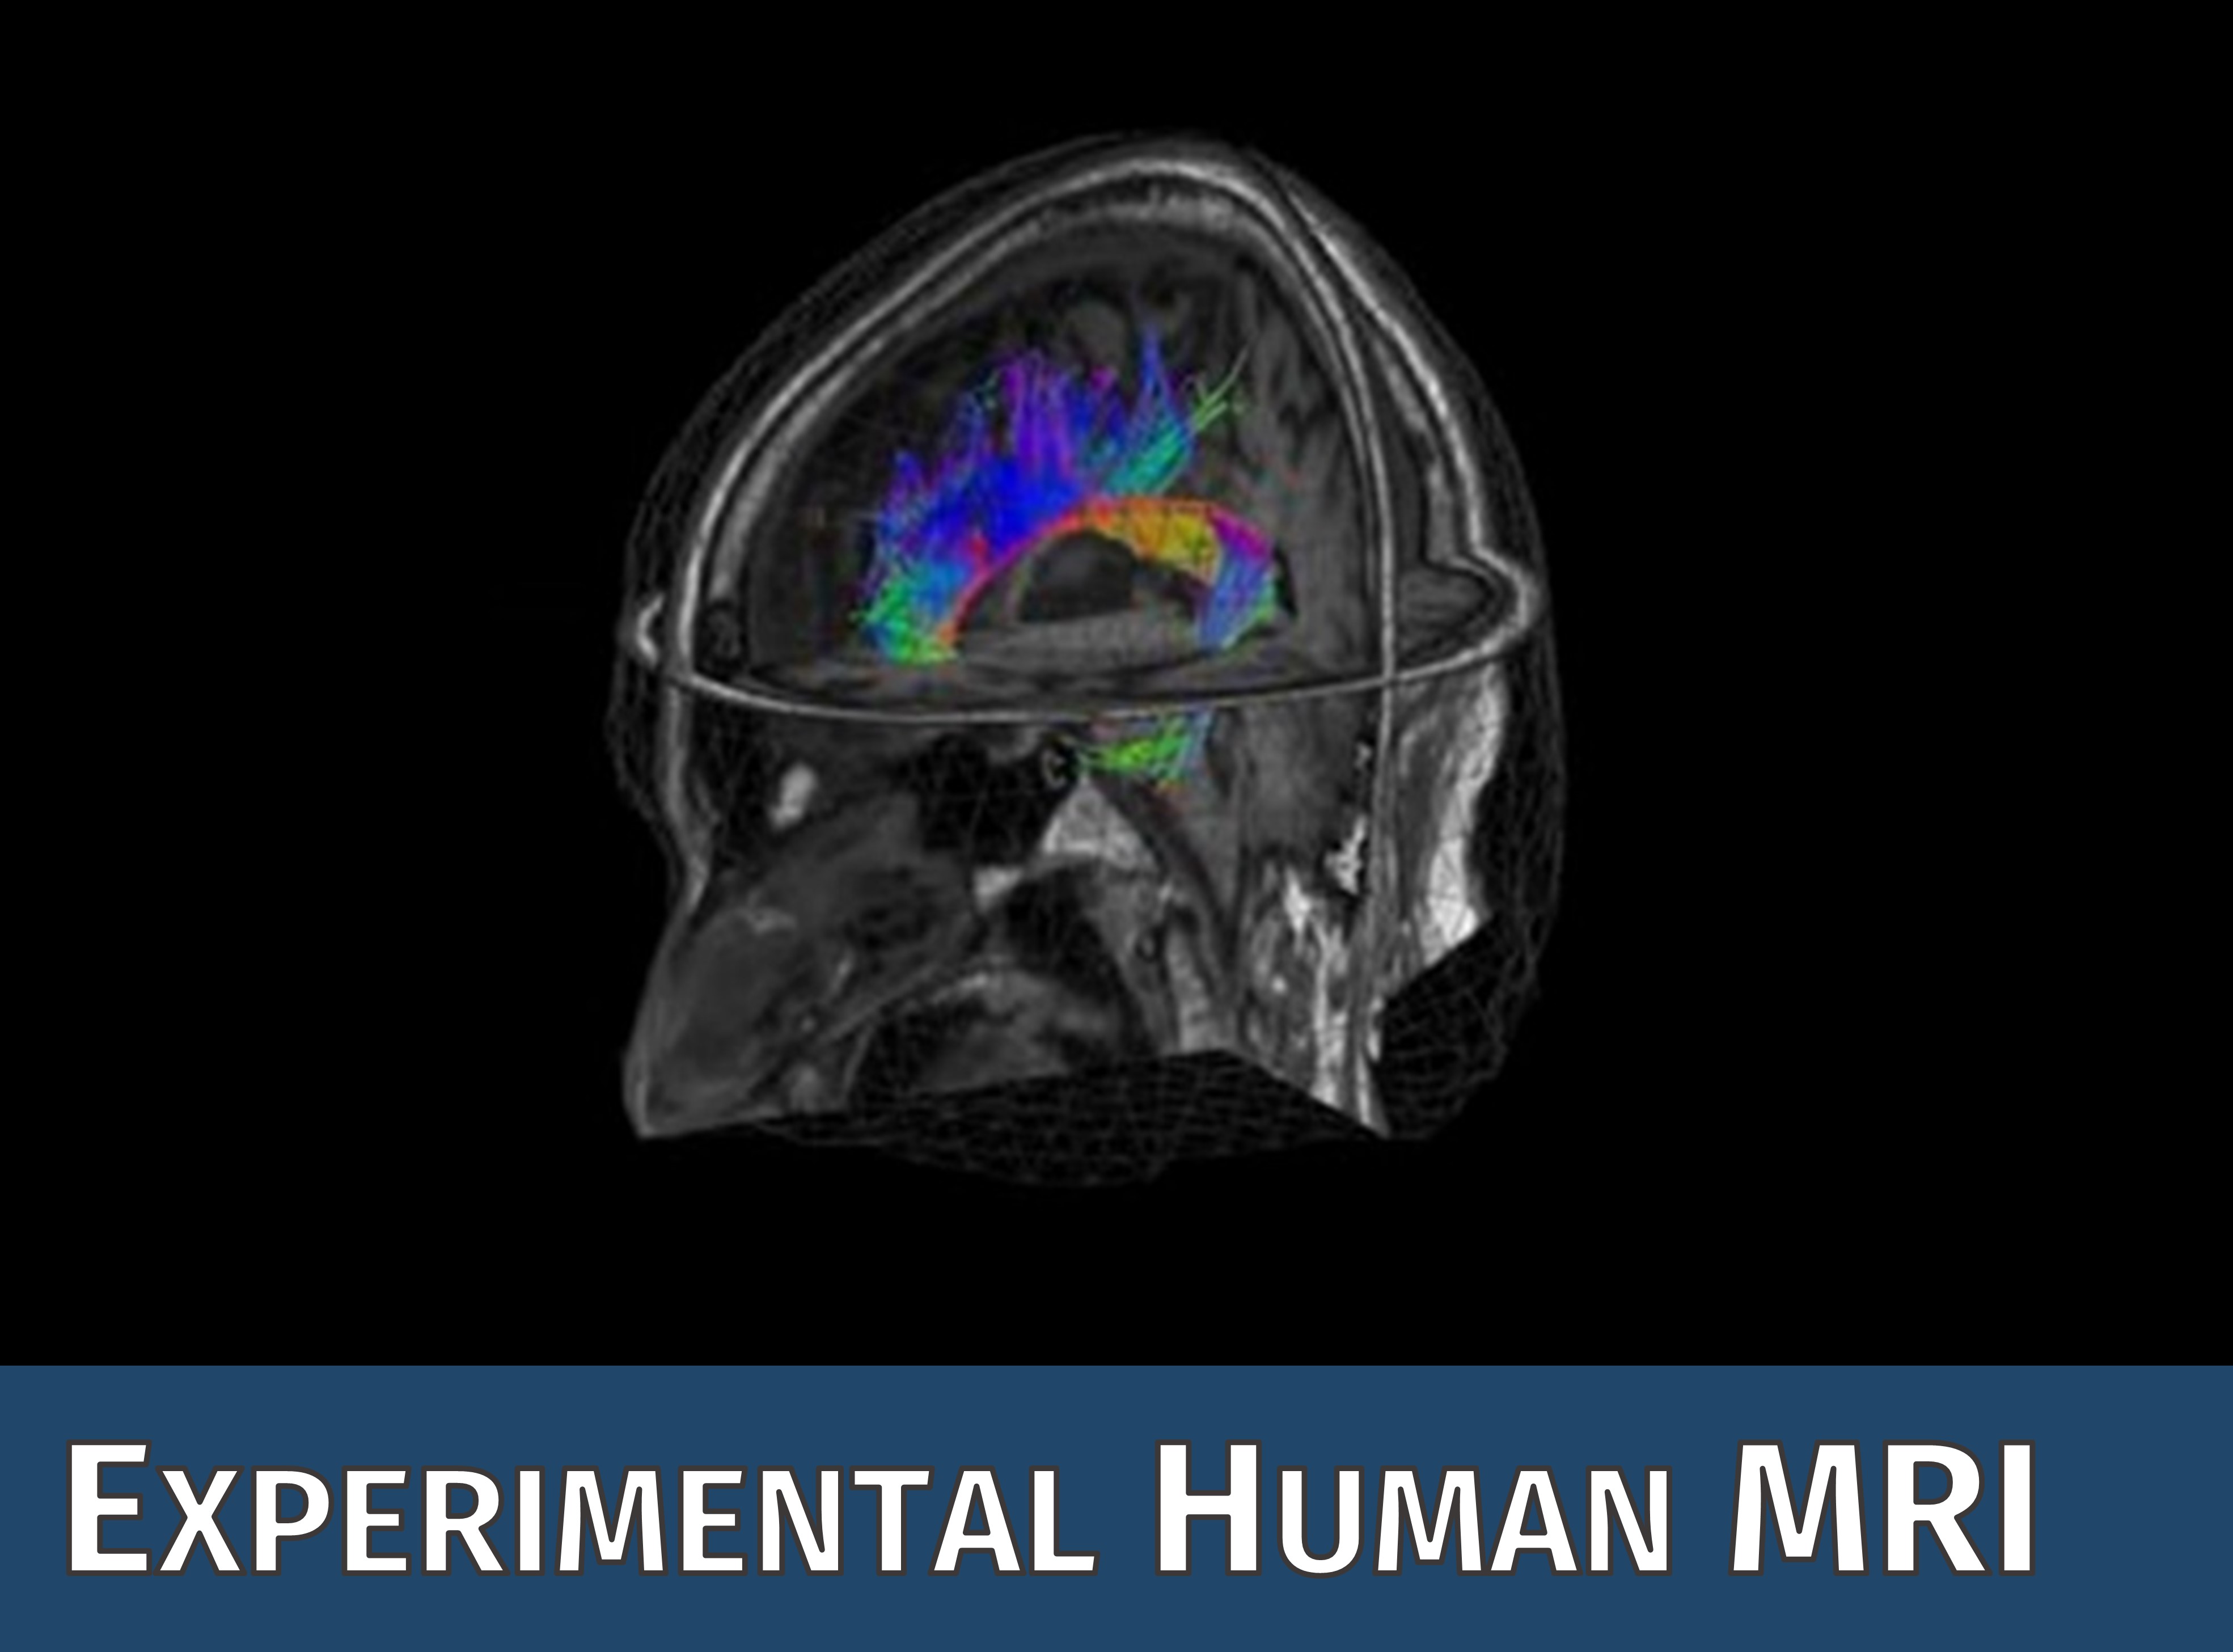 Das Symbolbild der CF Experimental Human MRI zeigt ein beispielhaftes MR Bild vom humanen Kopf mit Diffusionsströmen.